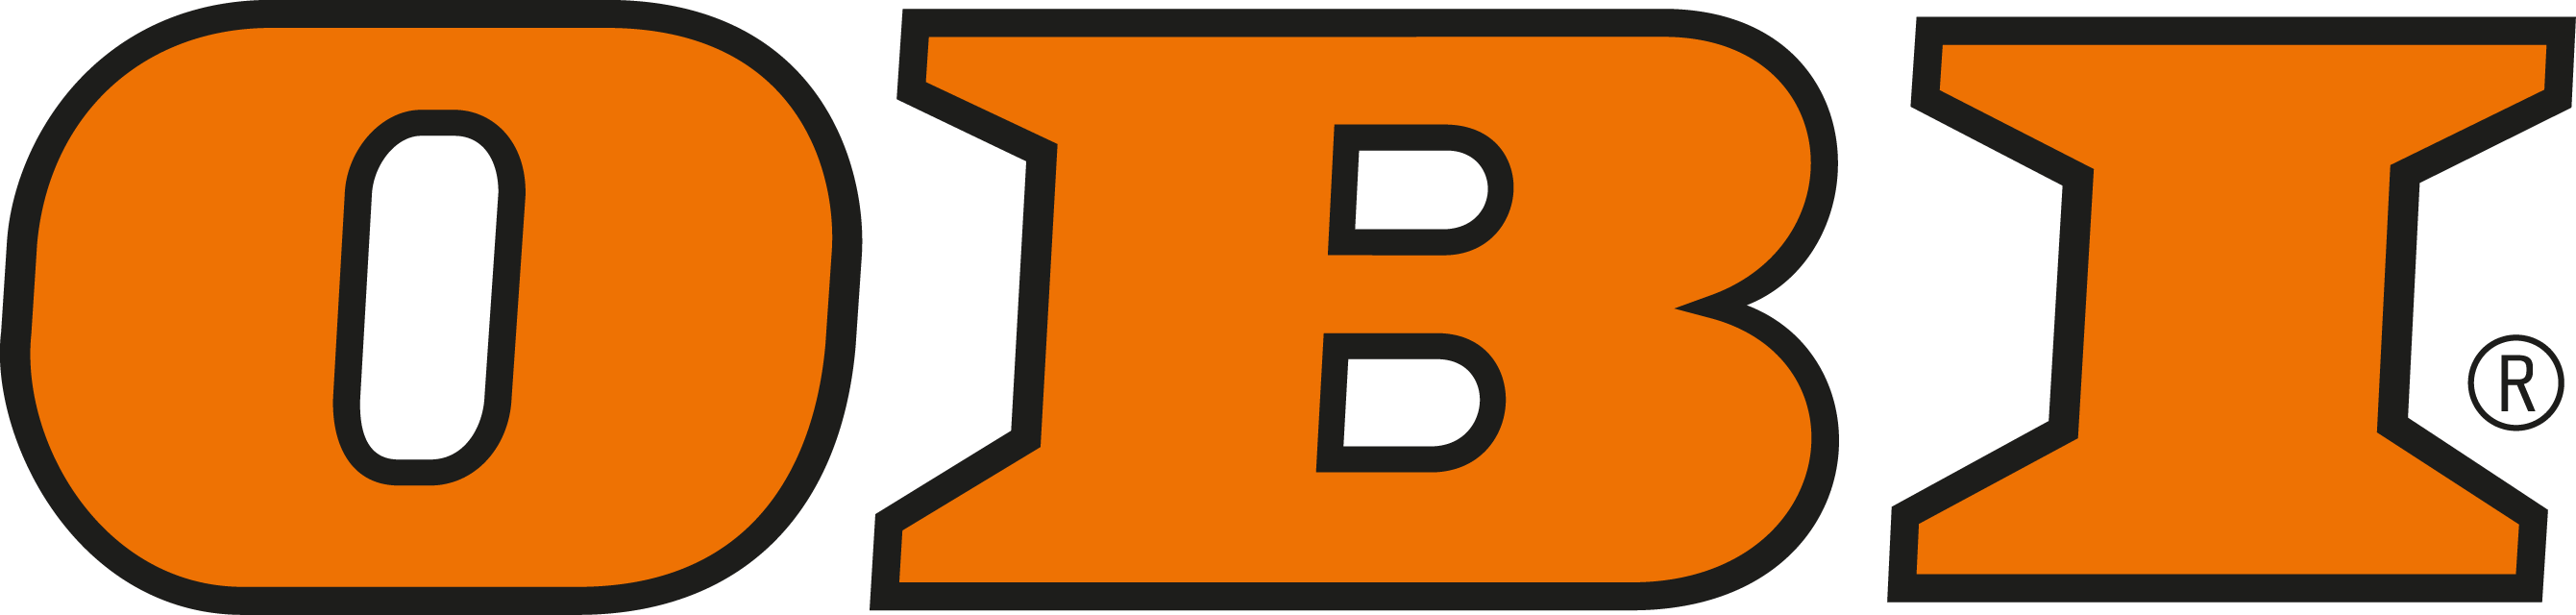 Obi Logo png